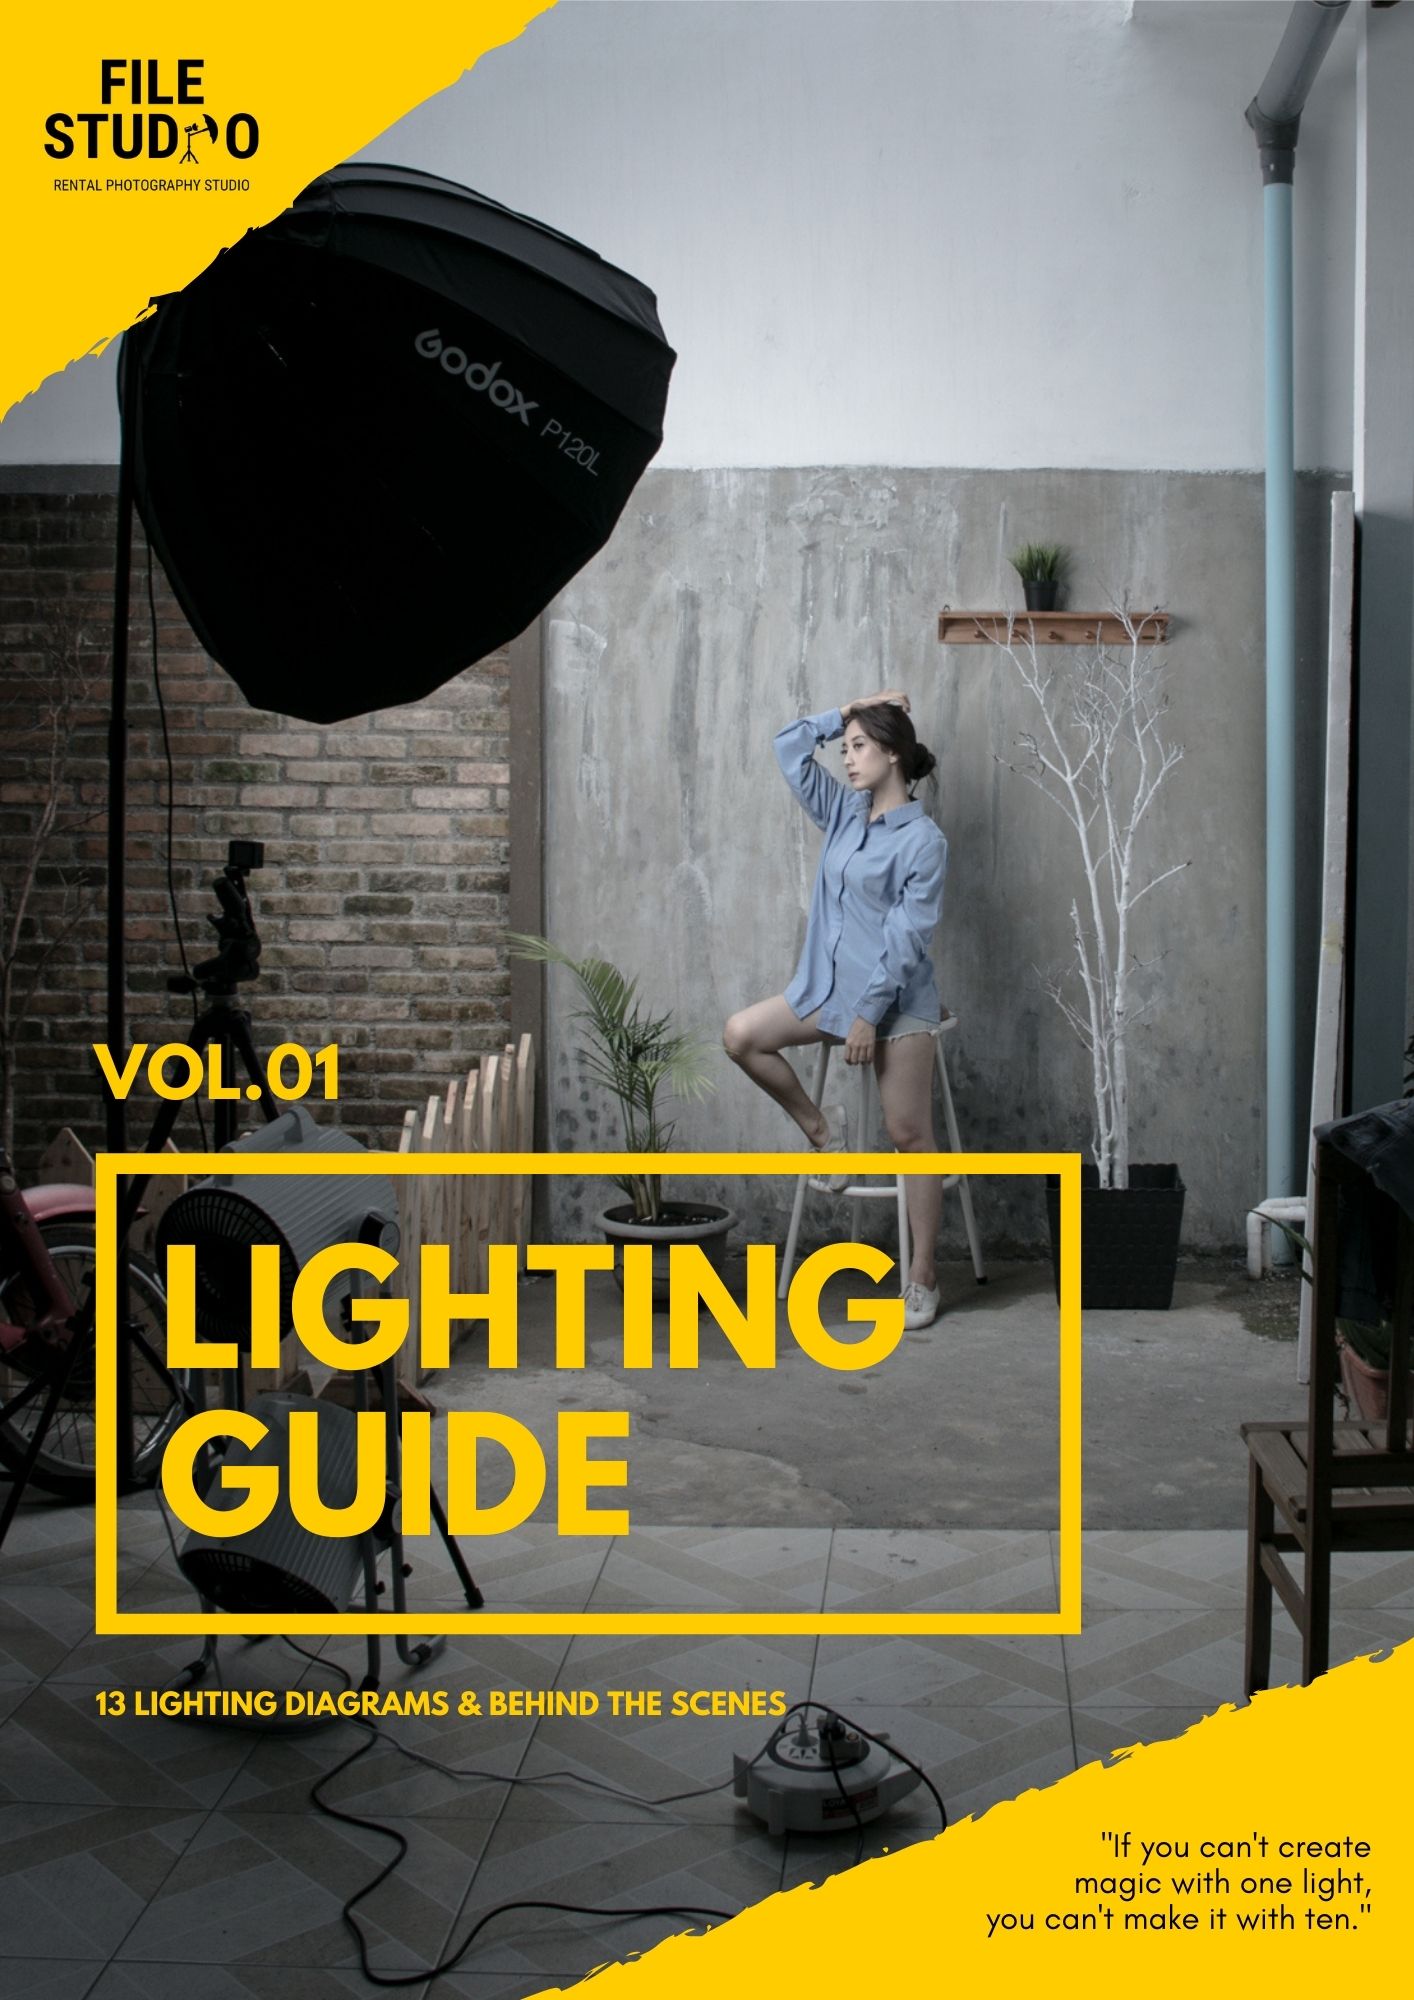 LIGHTING GUIDE VOL 01 File Academy | Kelas Fotografi dan Entrepreneurship